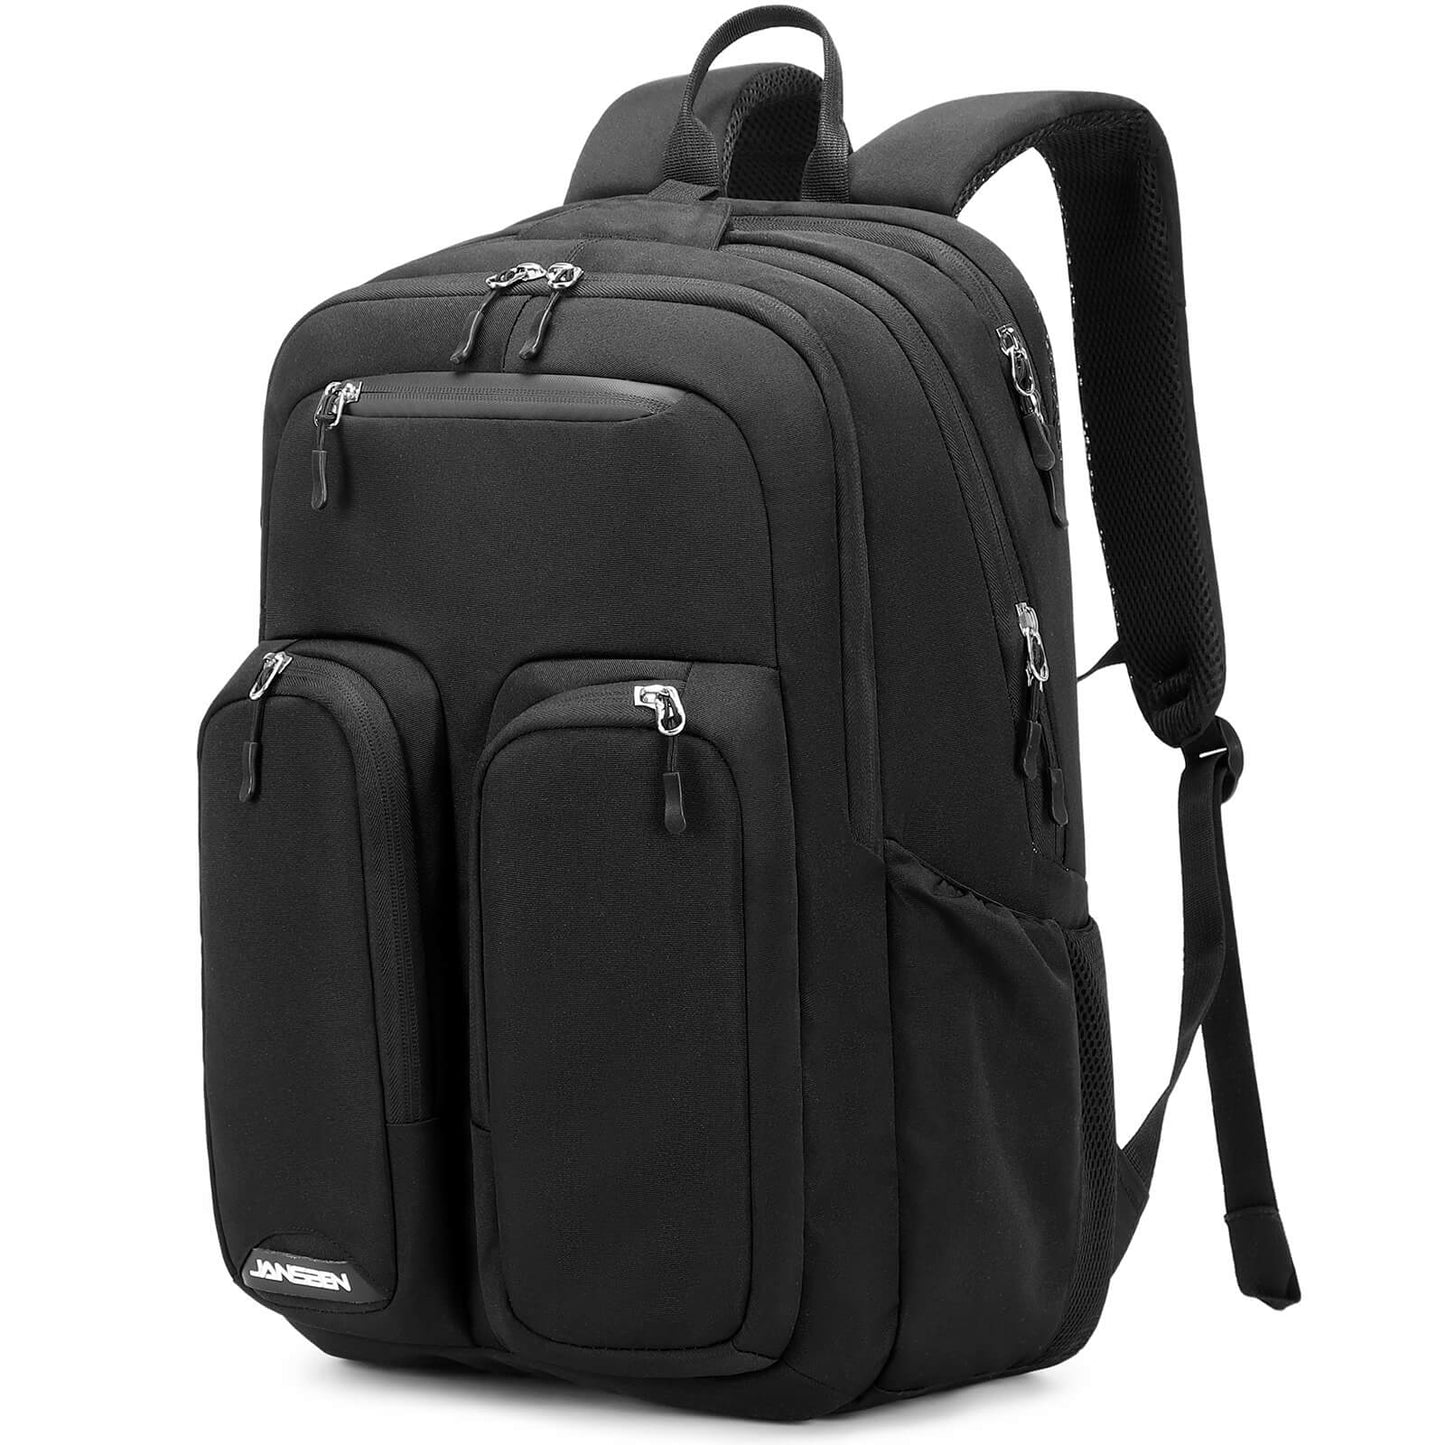 Smart-Laptop-Backpack-jansben-E042-black-side